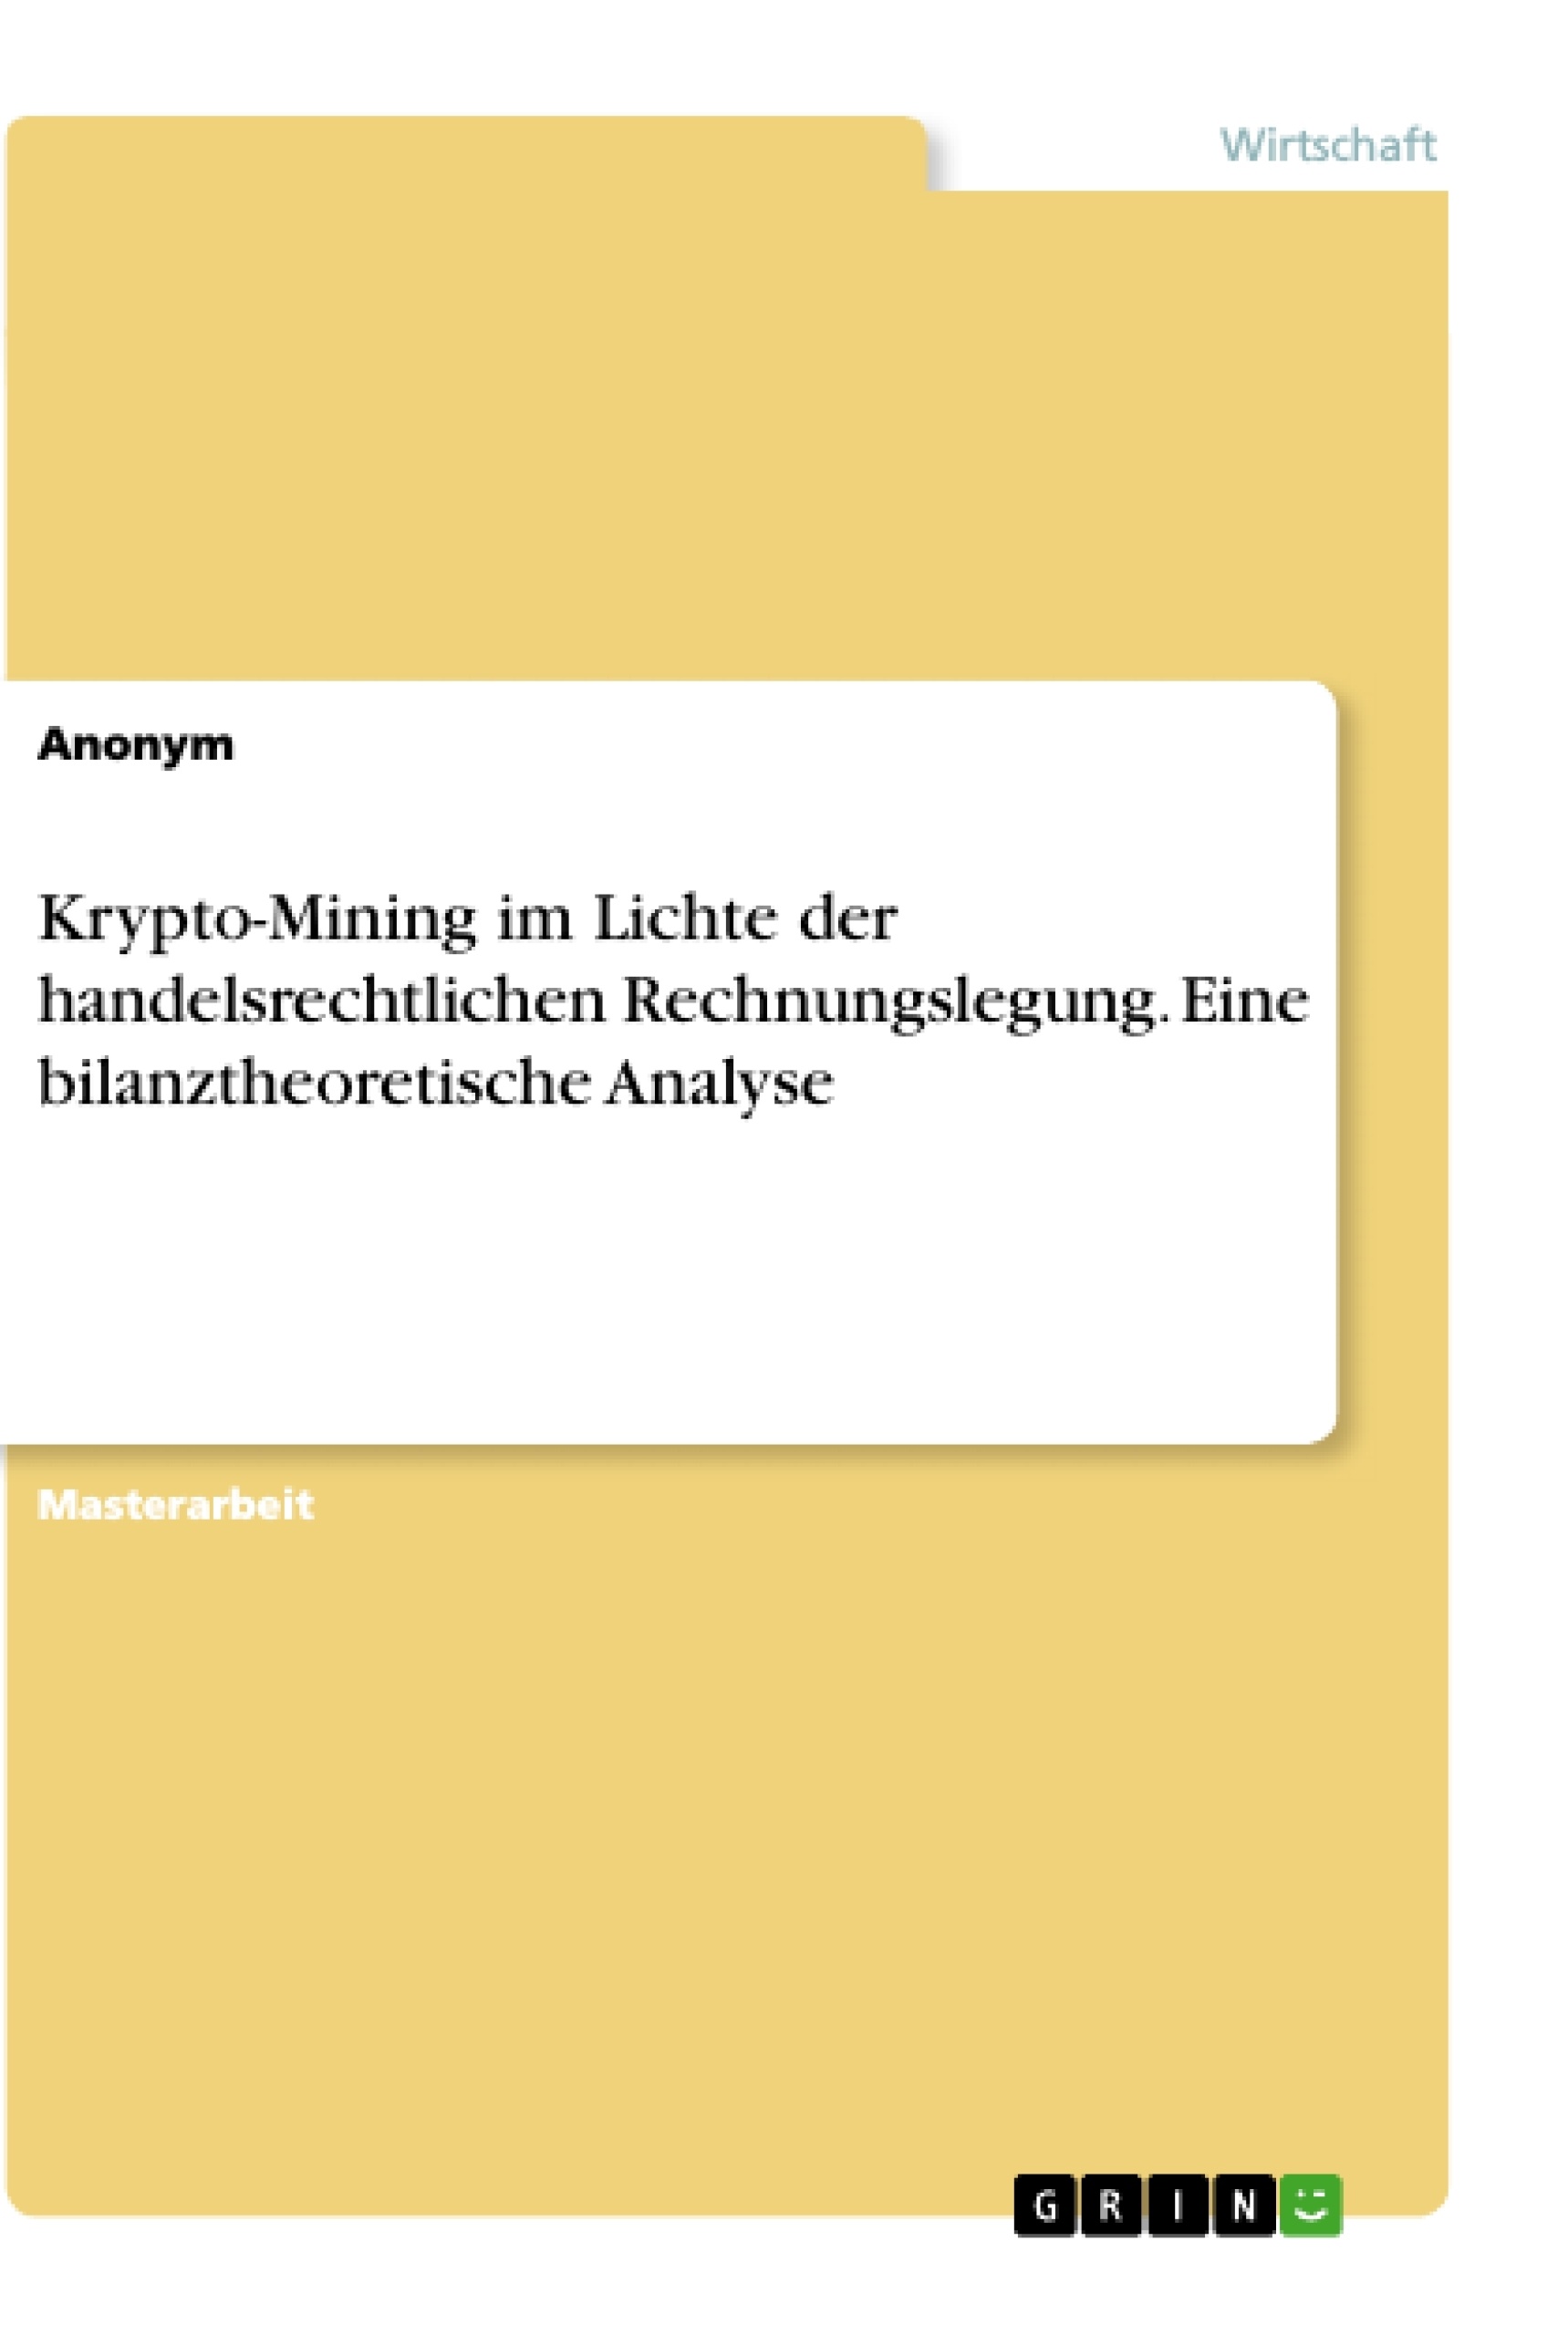 Title: Krypto-Mining im Lichte der handelsrechtlichen Rechnungslegung. Eine bilanztheoretische Analyse